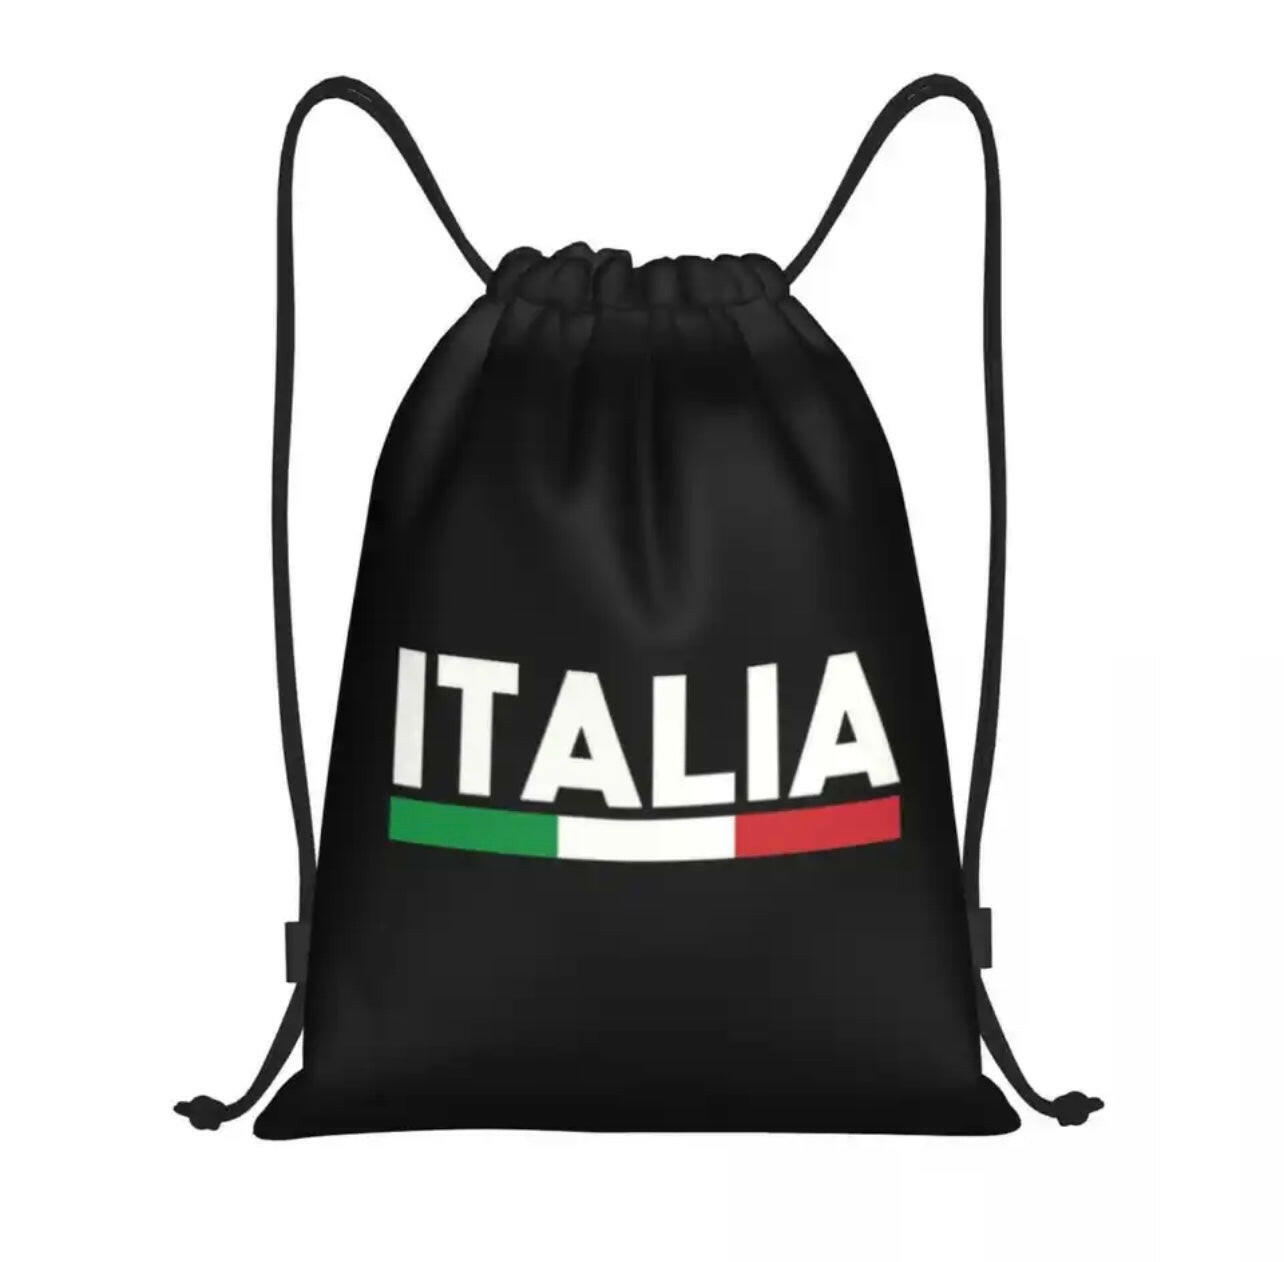 Italia Drawstring Bag.